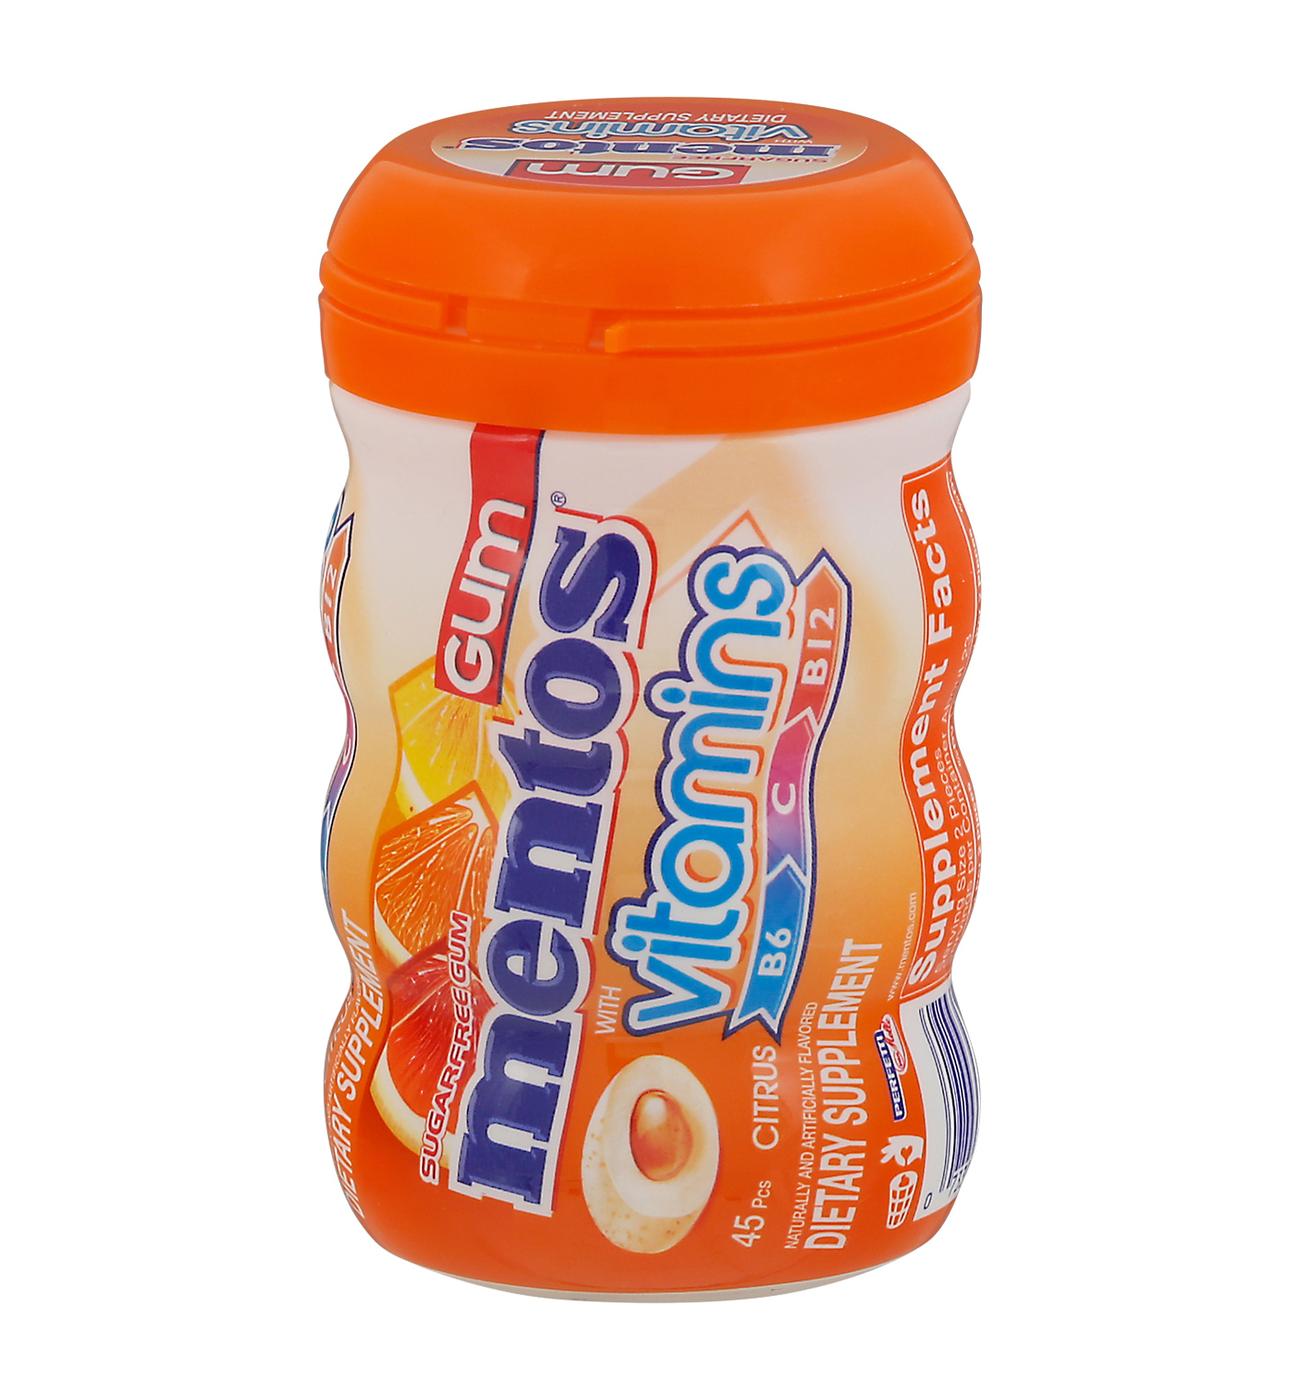 Mentos Vitamins Citrus Sugarfree Gum; image 1 of 2